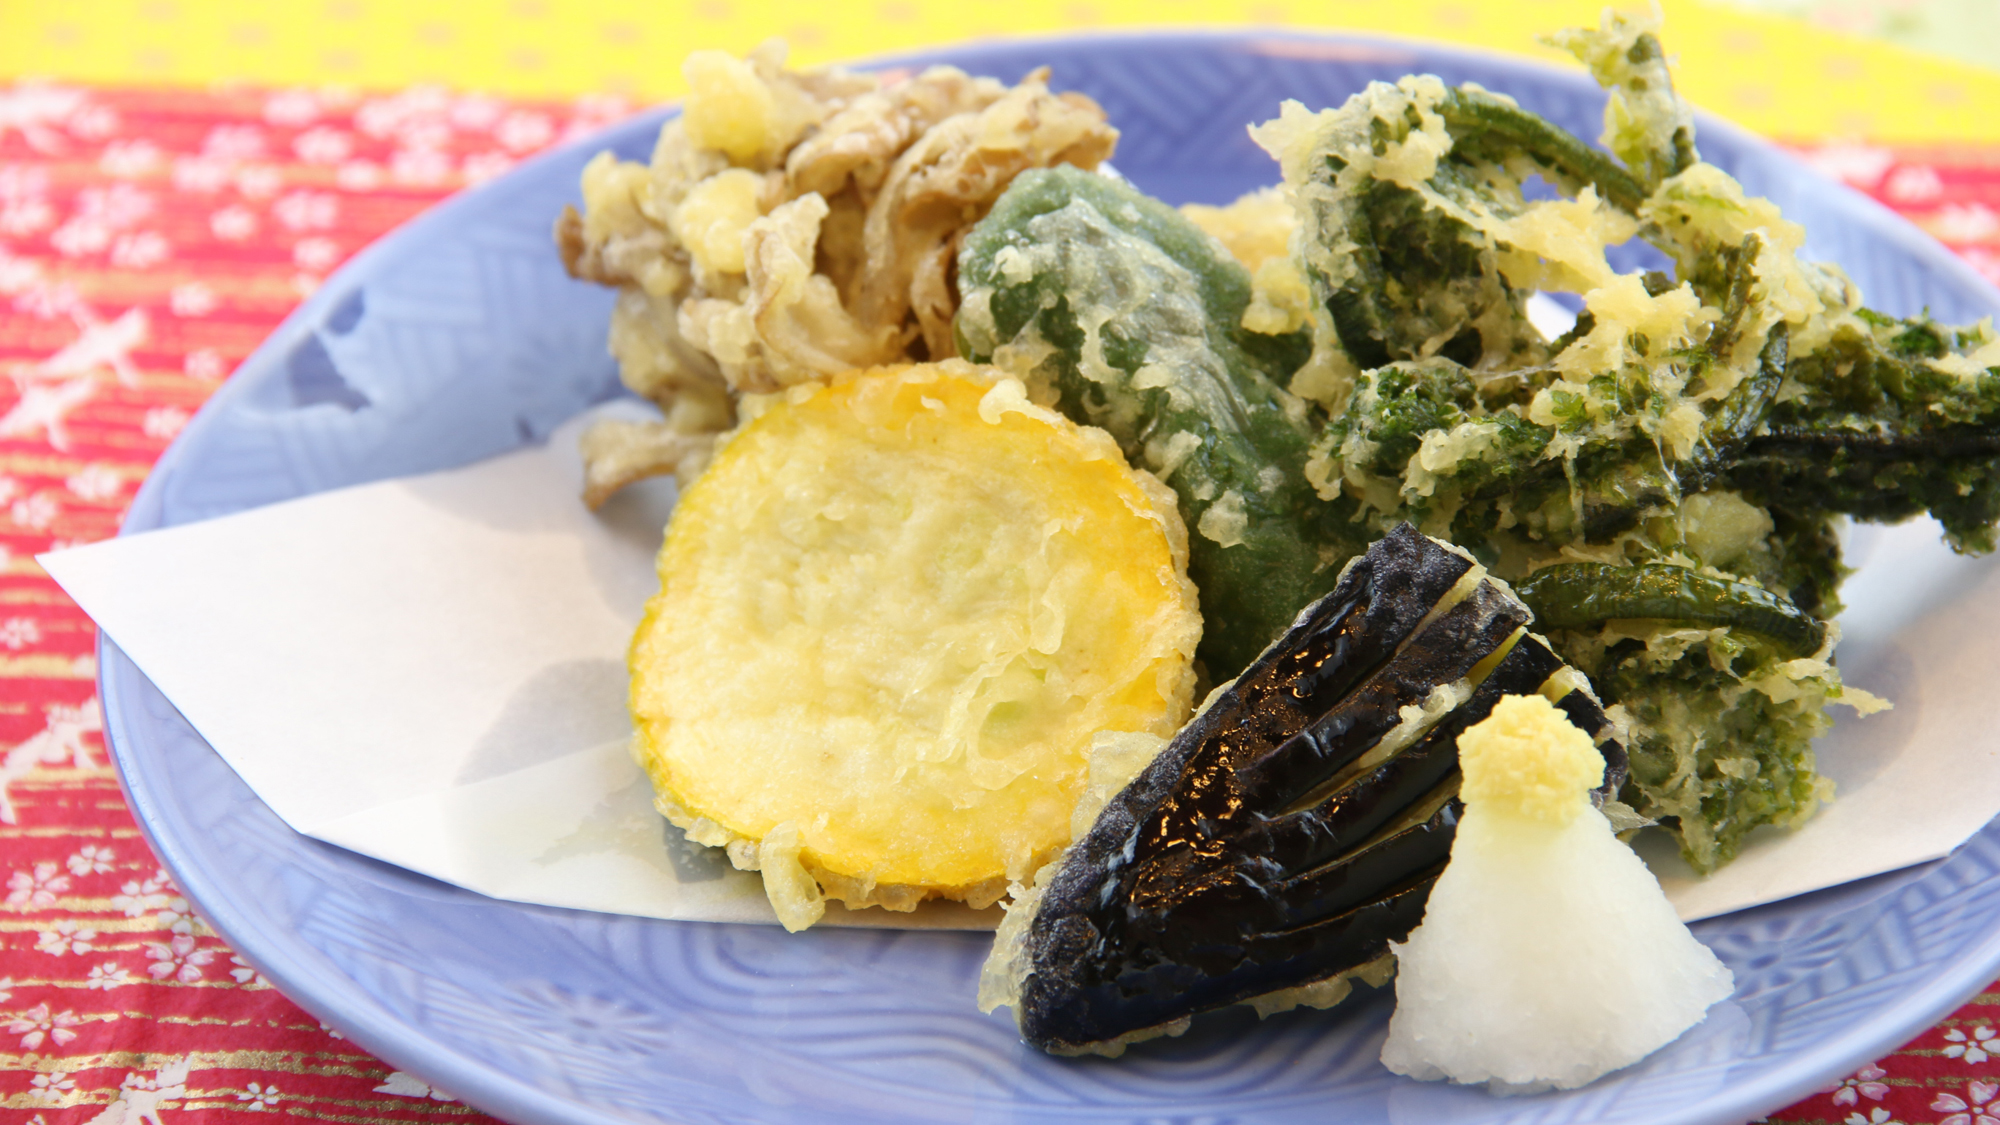 季節の野菜の天ぷら。旬の山の幸を丁寧に揚げてます